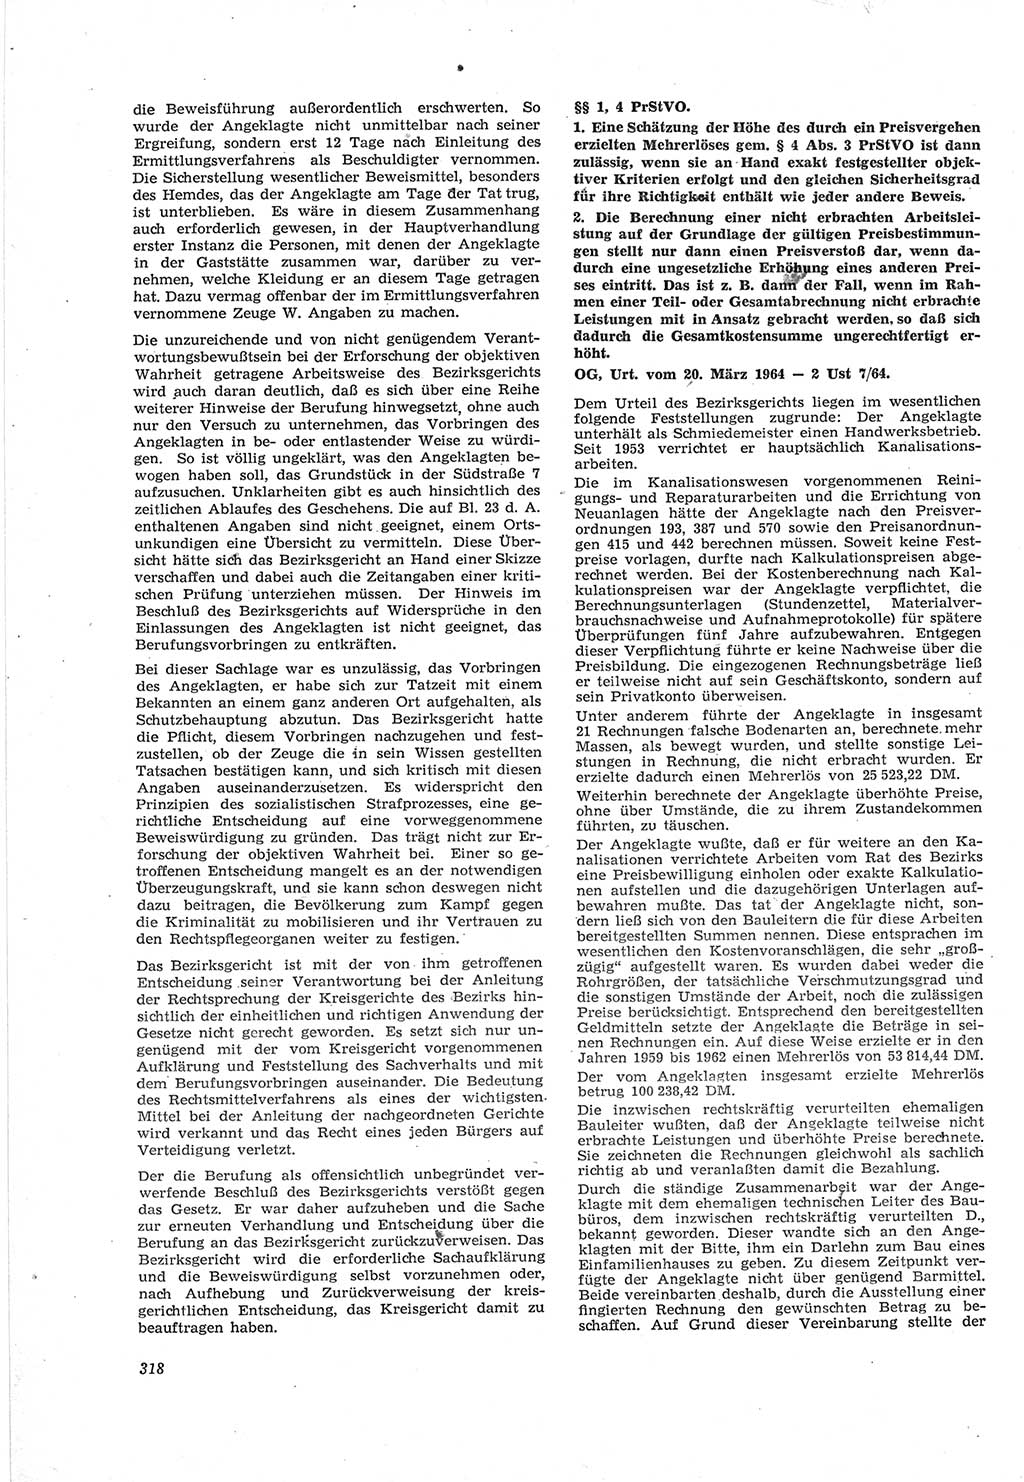 Neue Justiz (NJ), Zeitschrift für Recht und Rechtswissenschaft [Deutsche Demokratische Republik (DDR)], 18. Jahrgang 1964, Seite 318 (NJ DDR 1964, S. 318)